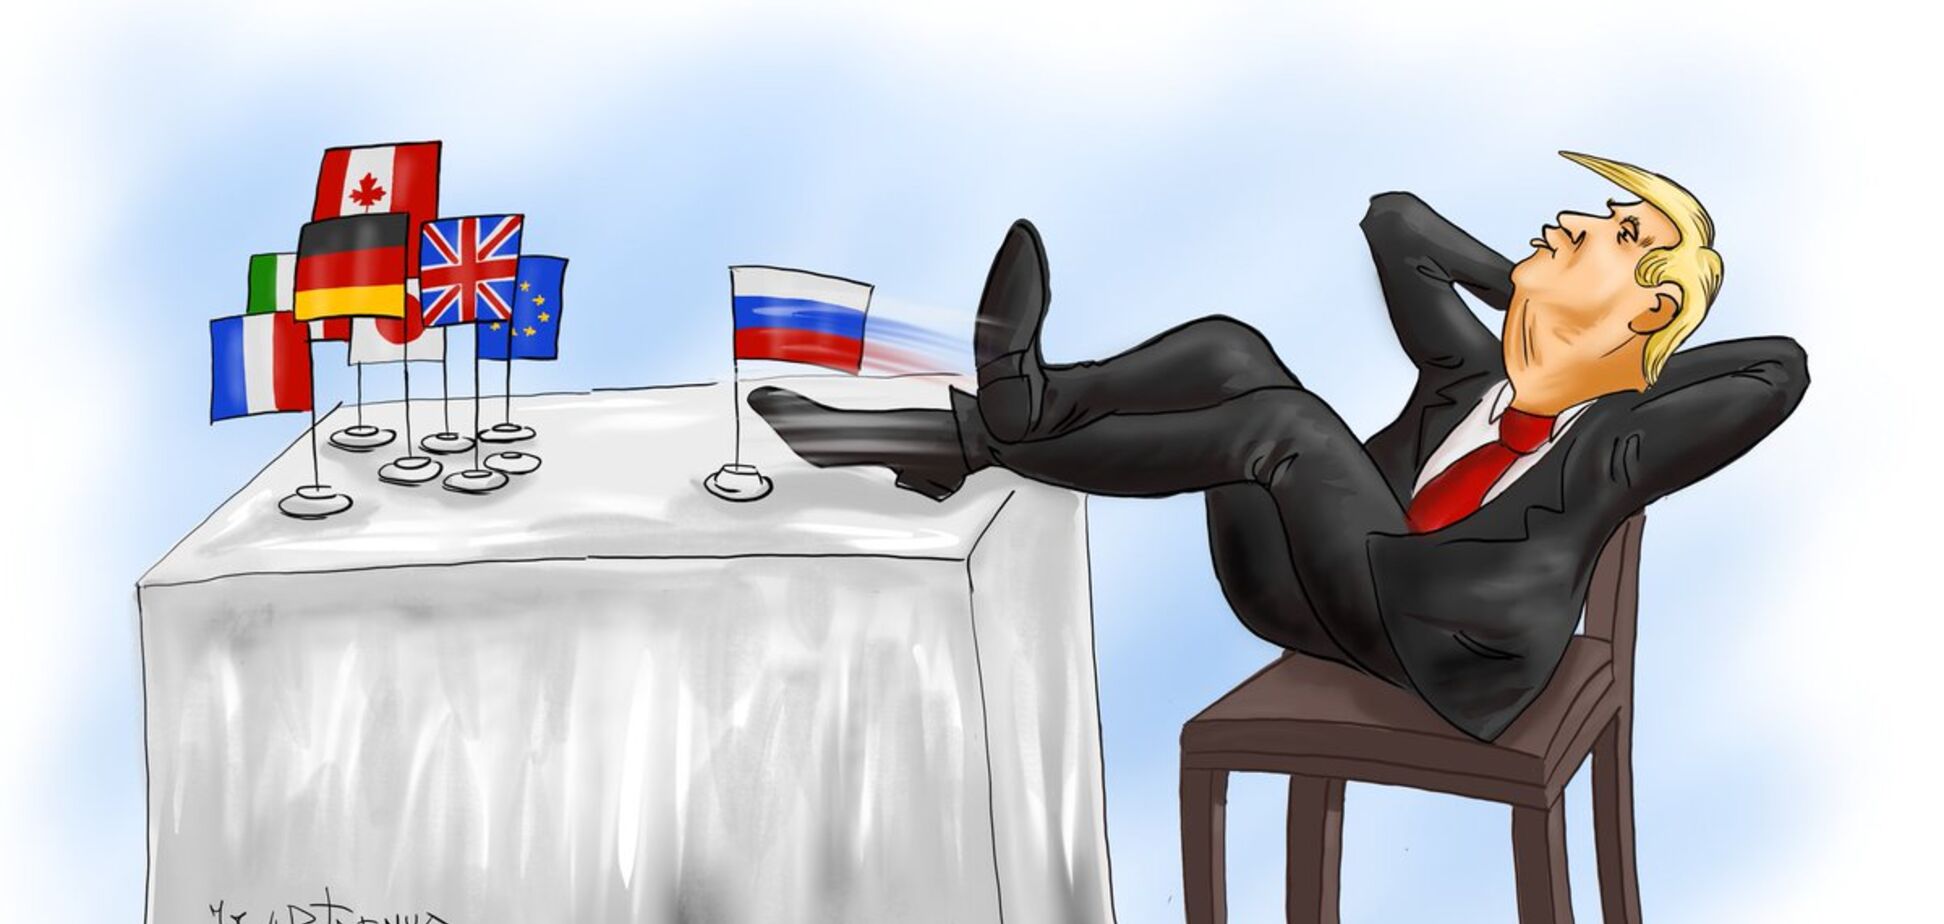 Русская восьмерка: появилась едкая карикатура на саммит G7